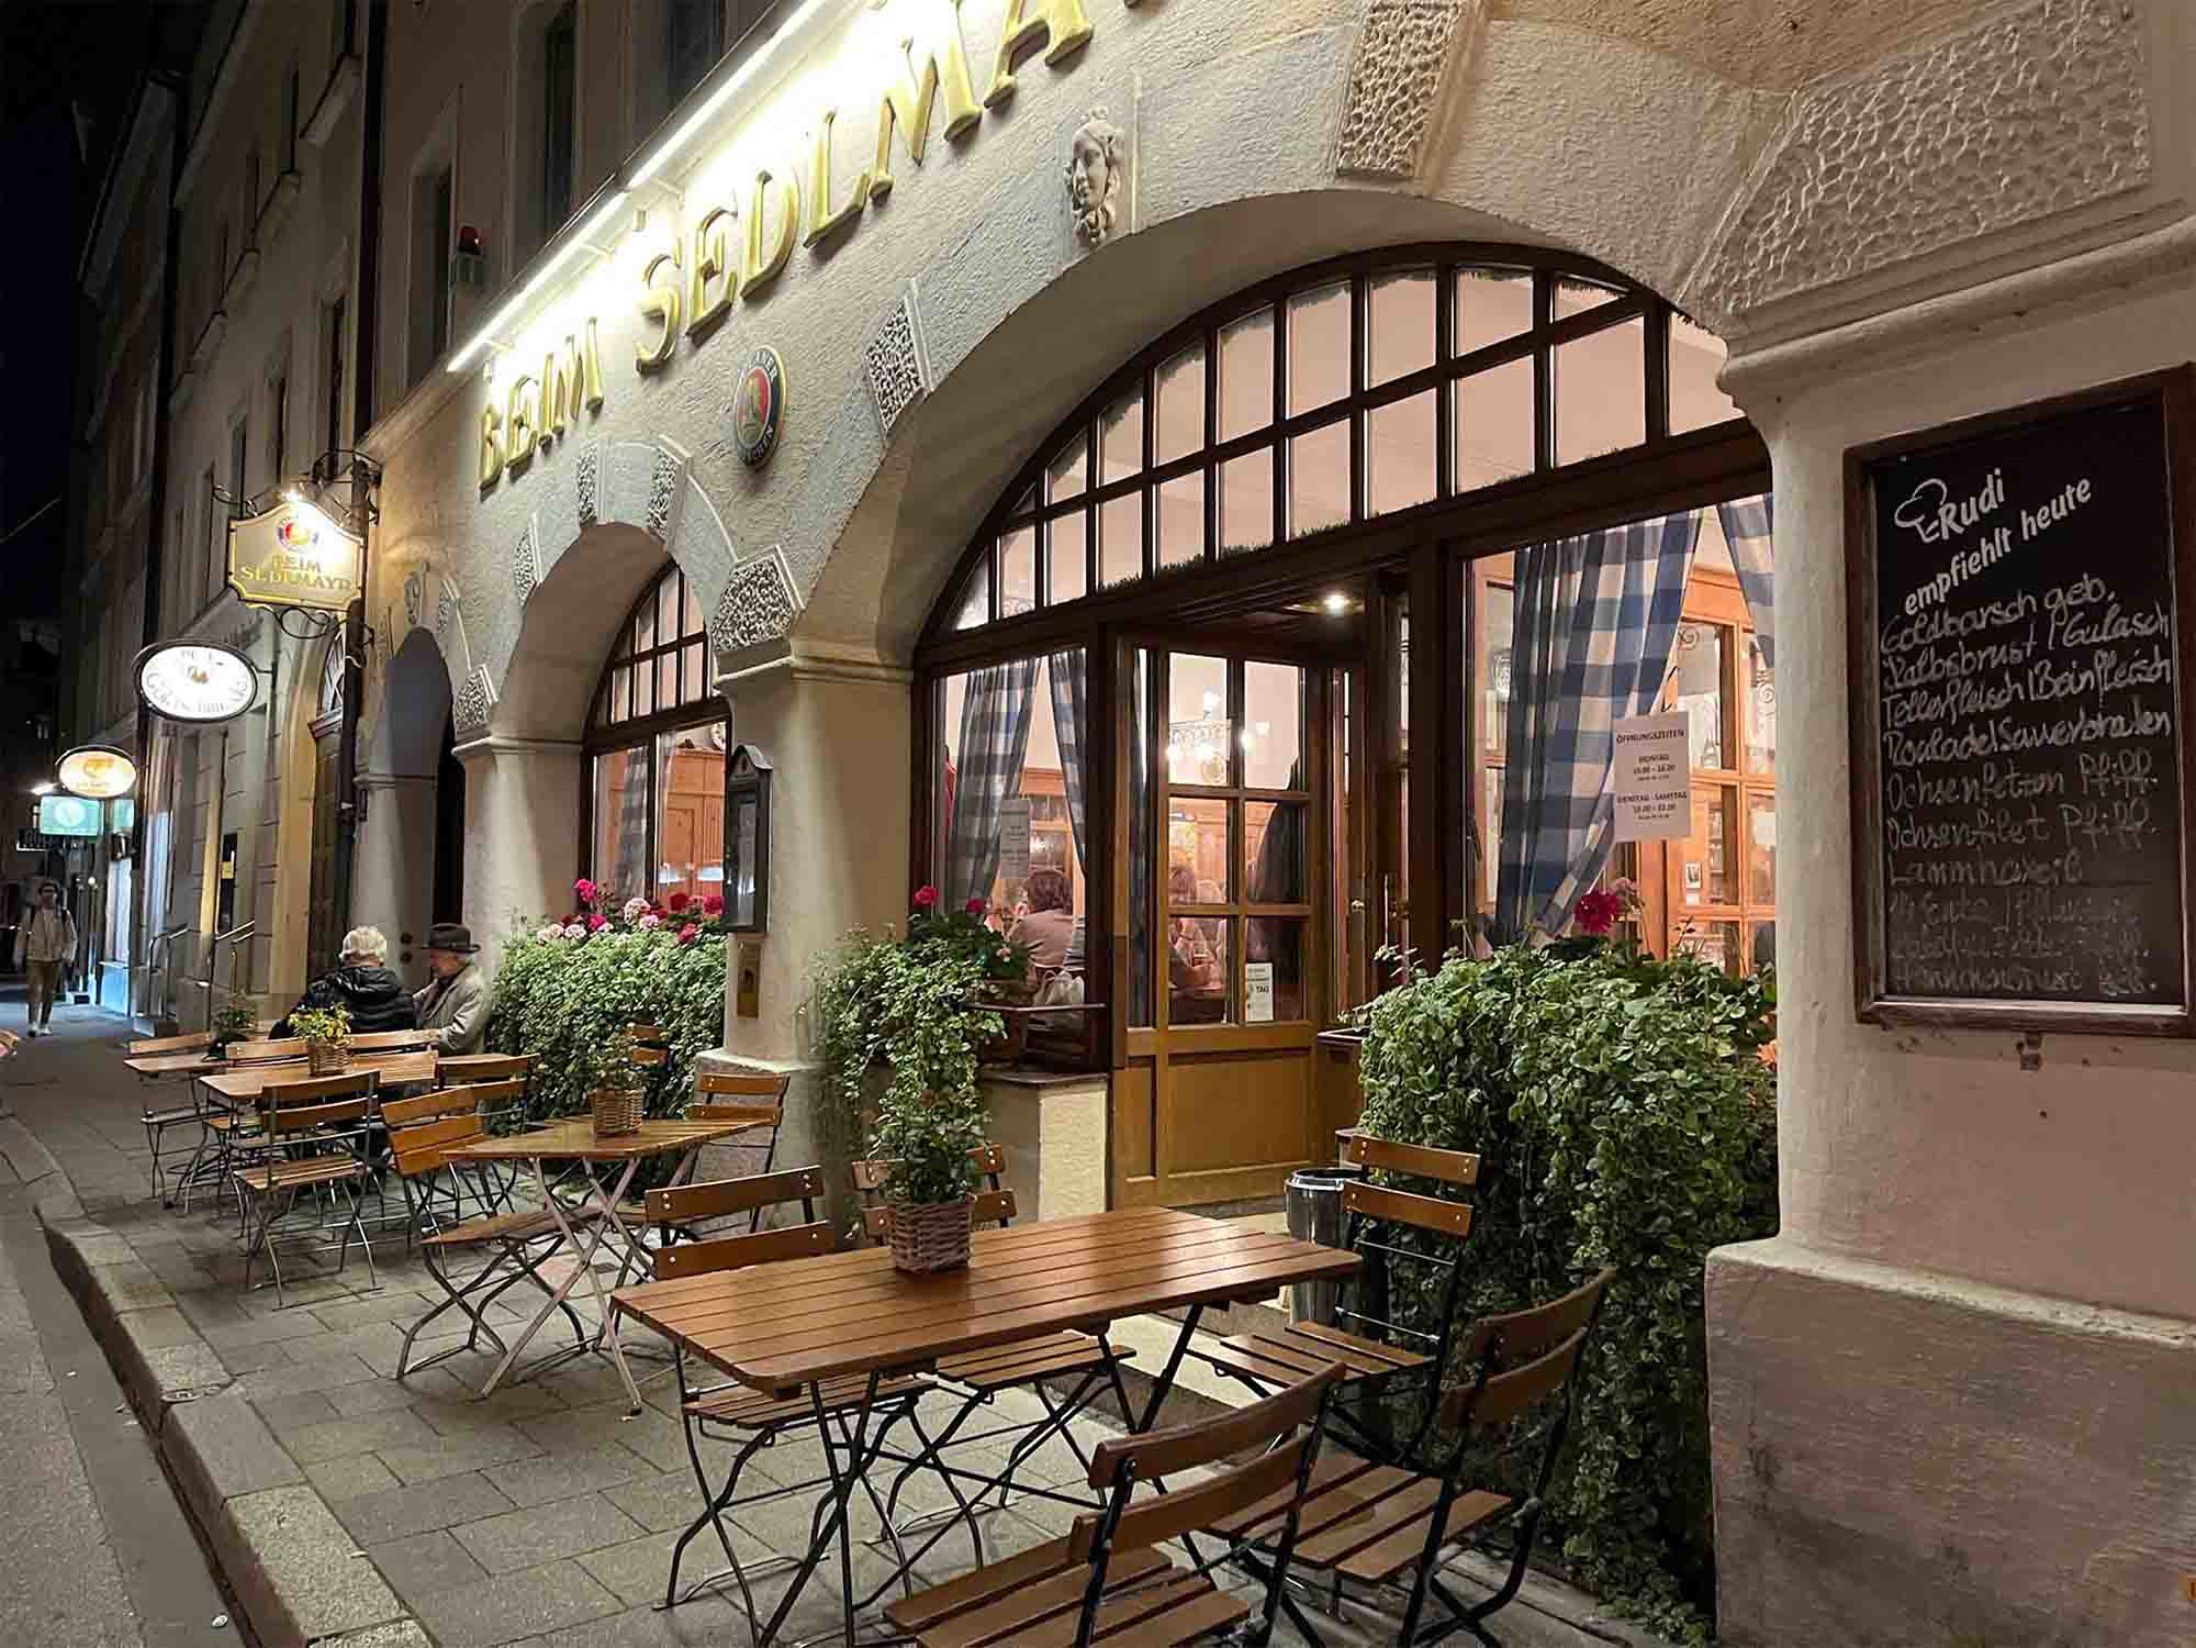 Beim Sedlmayr - Best Restaurants in Munich